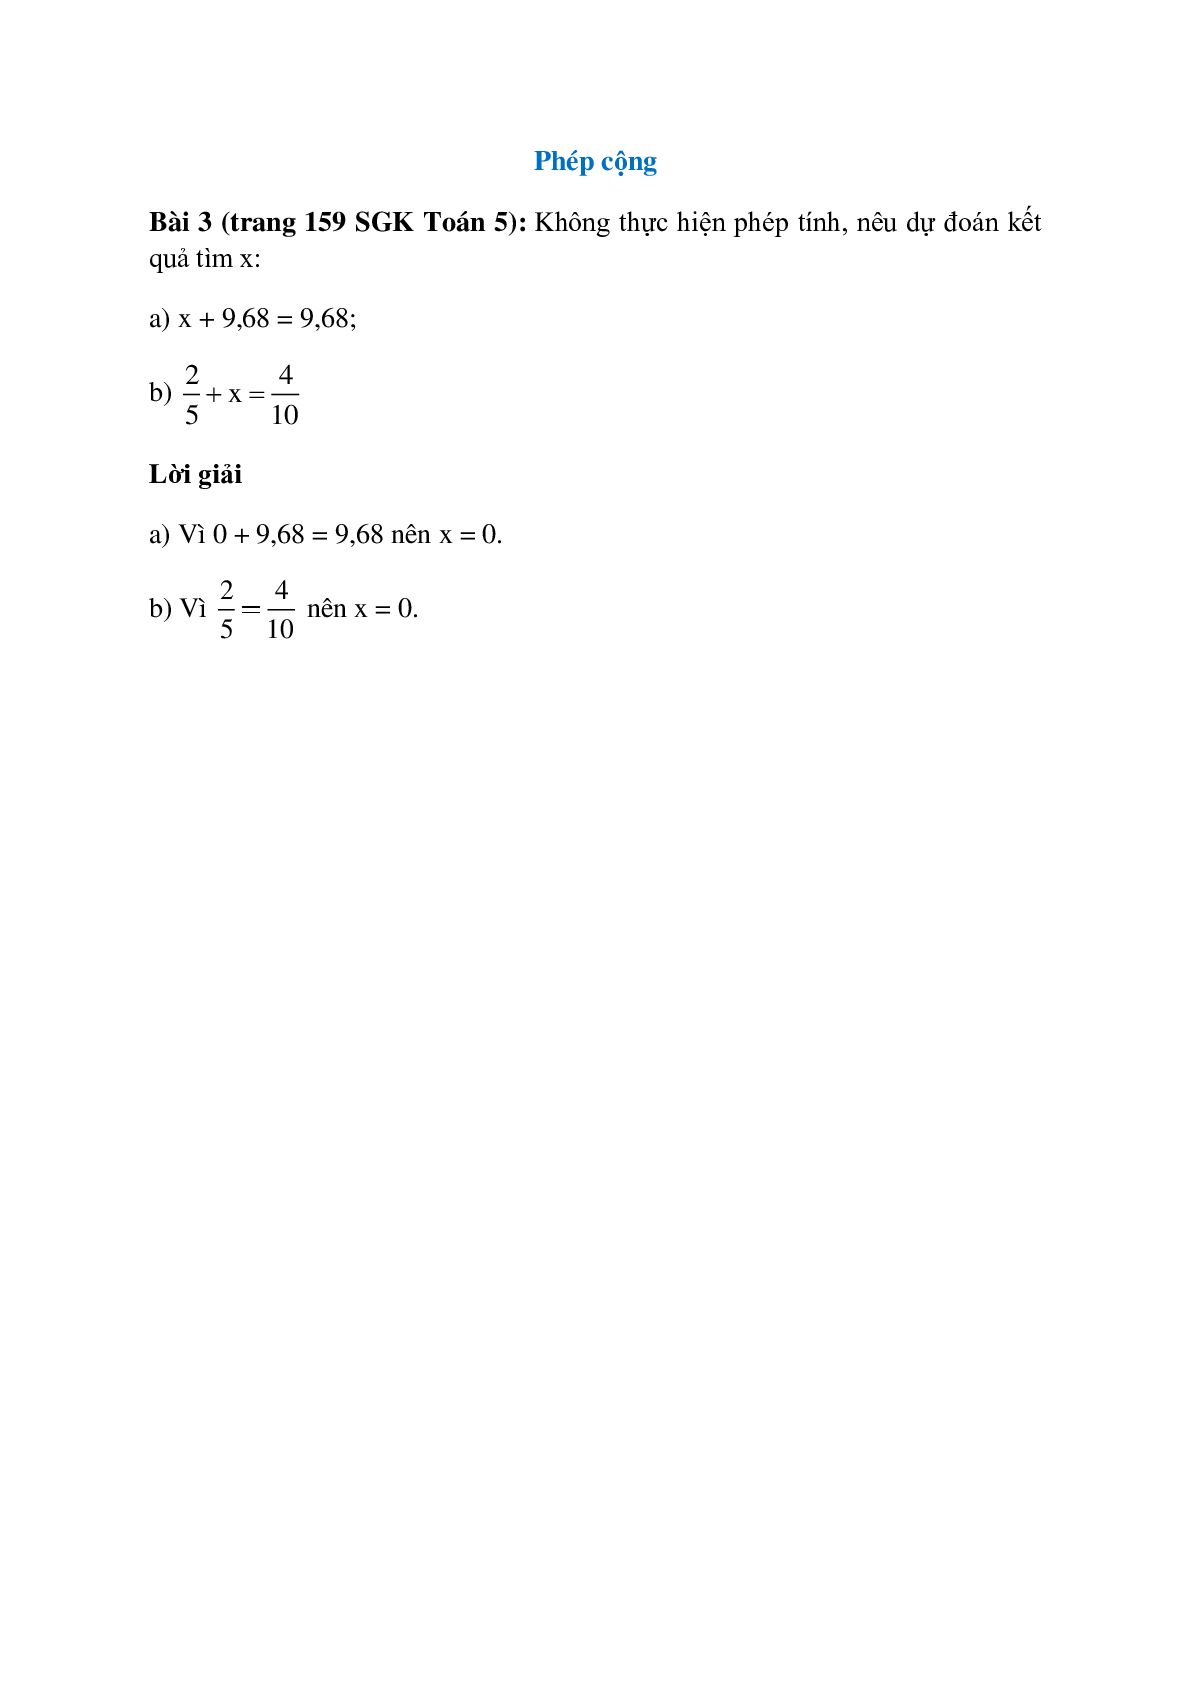 Không thực hiện phép tính, nêu dự đoán kết quả tìm x: x + 9,68 = 9,68 (trang 1)